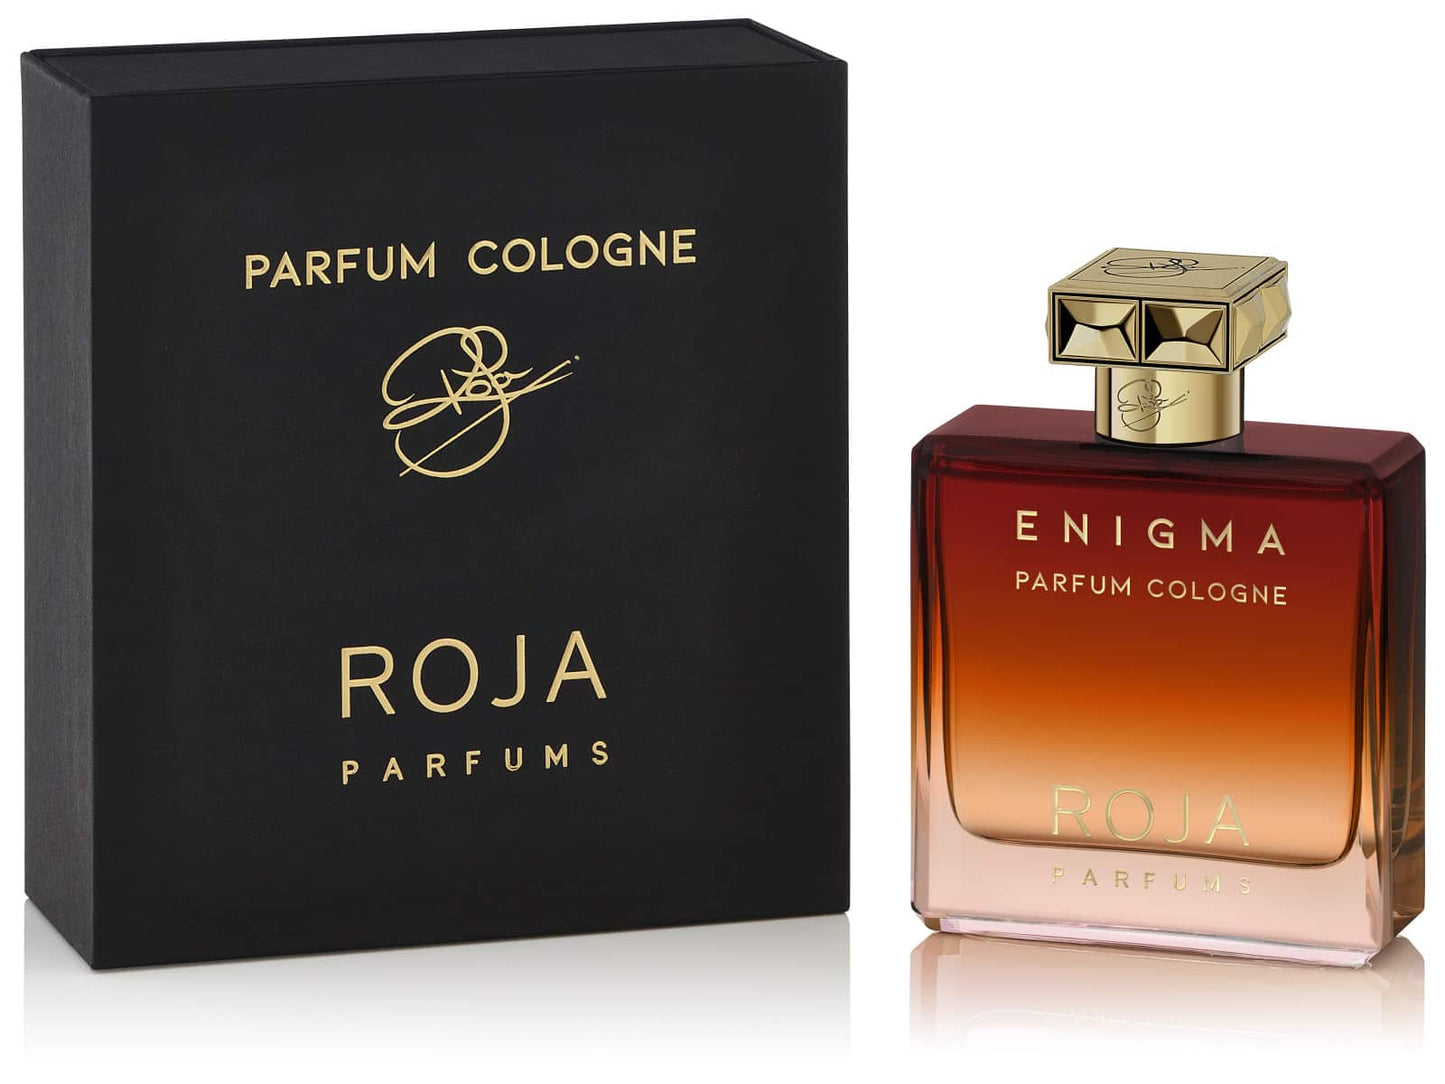 Roja - Enigma Pour Homme Parfum Cologne.